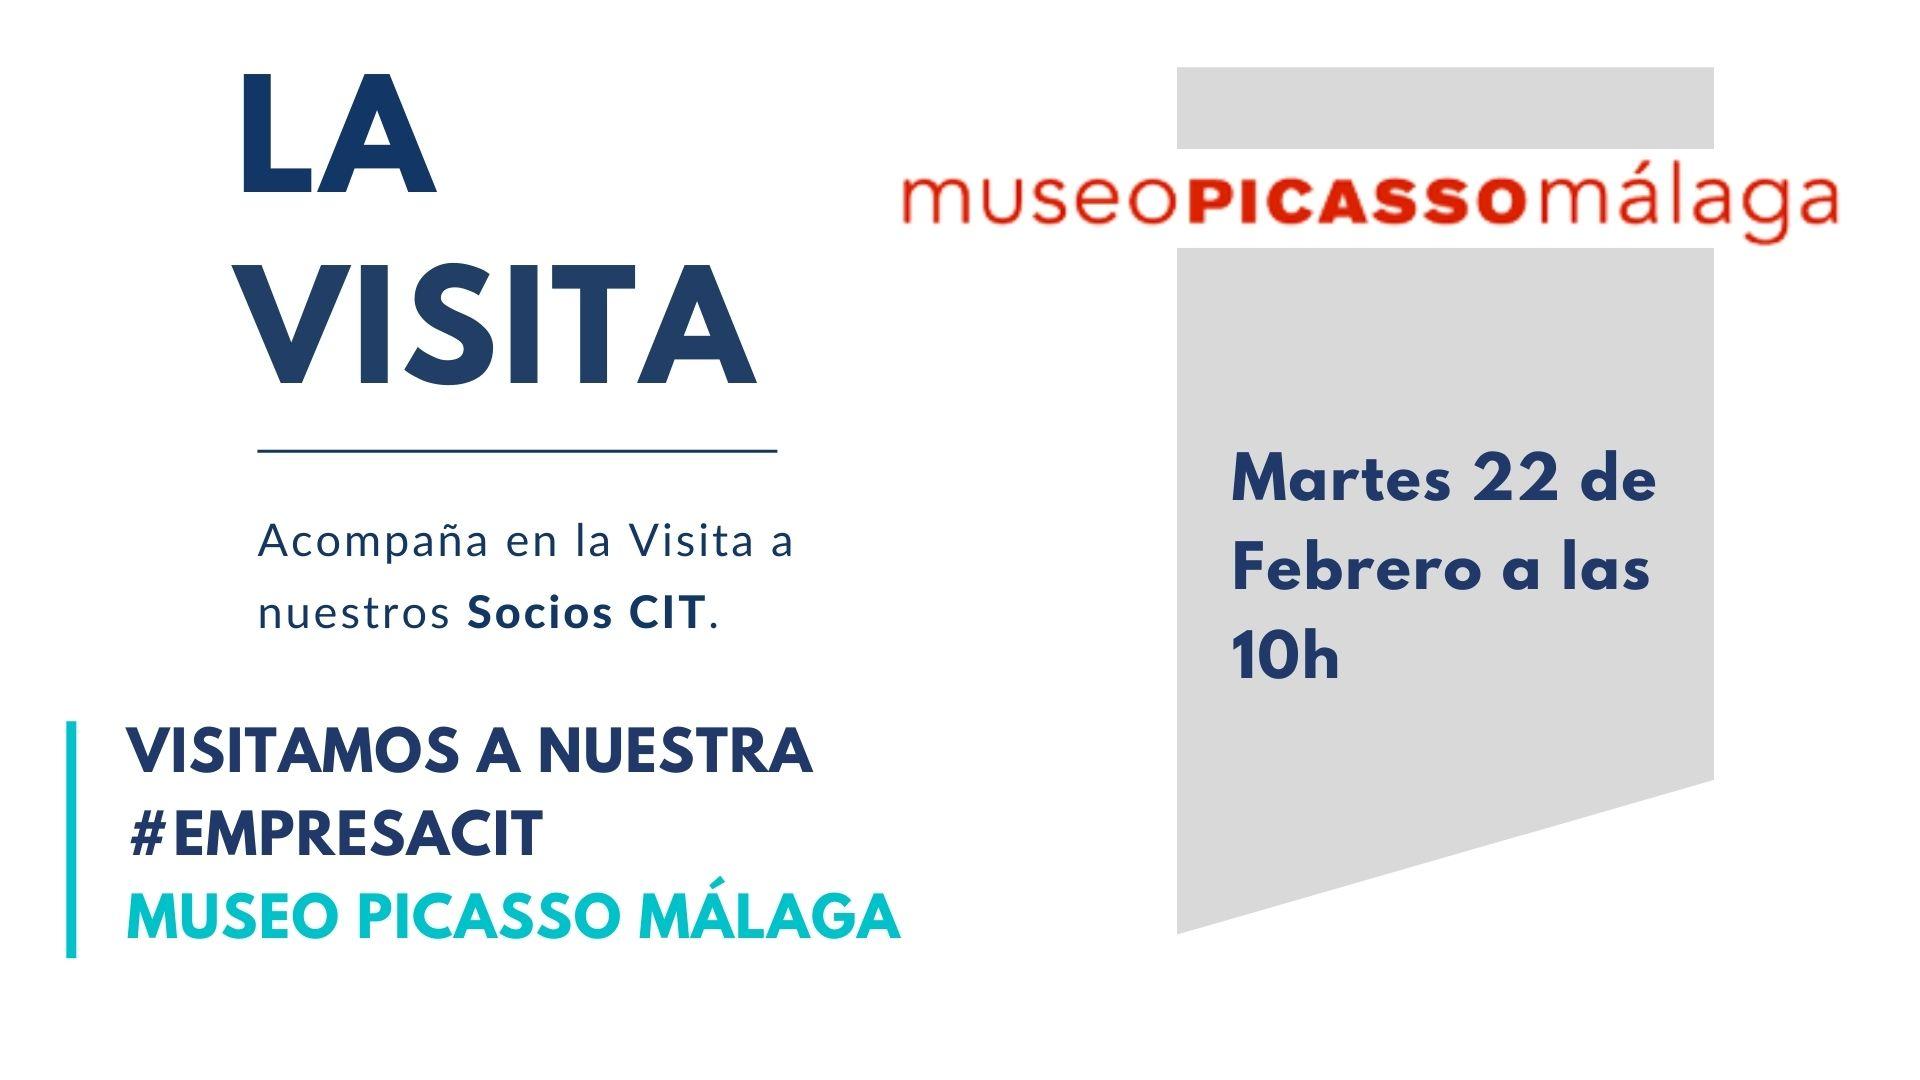 La visita con Museo Picasso Málaga